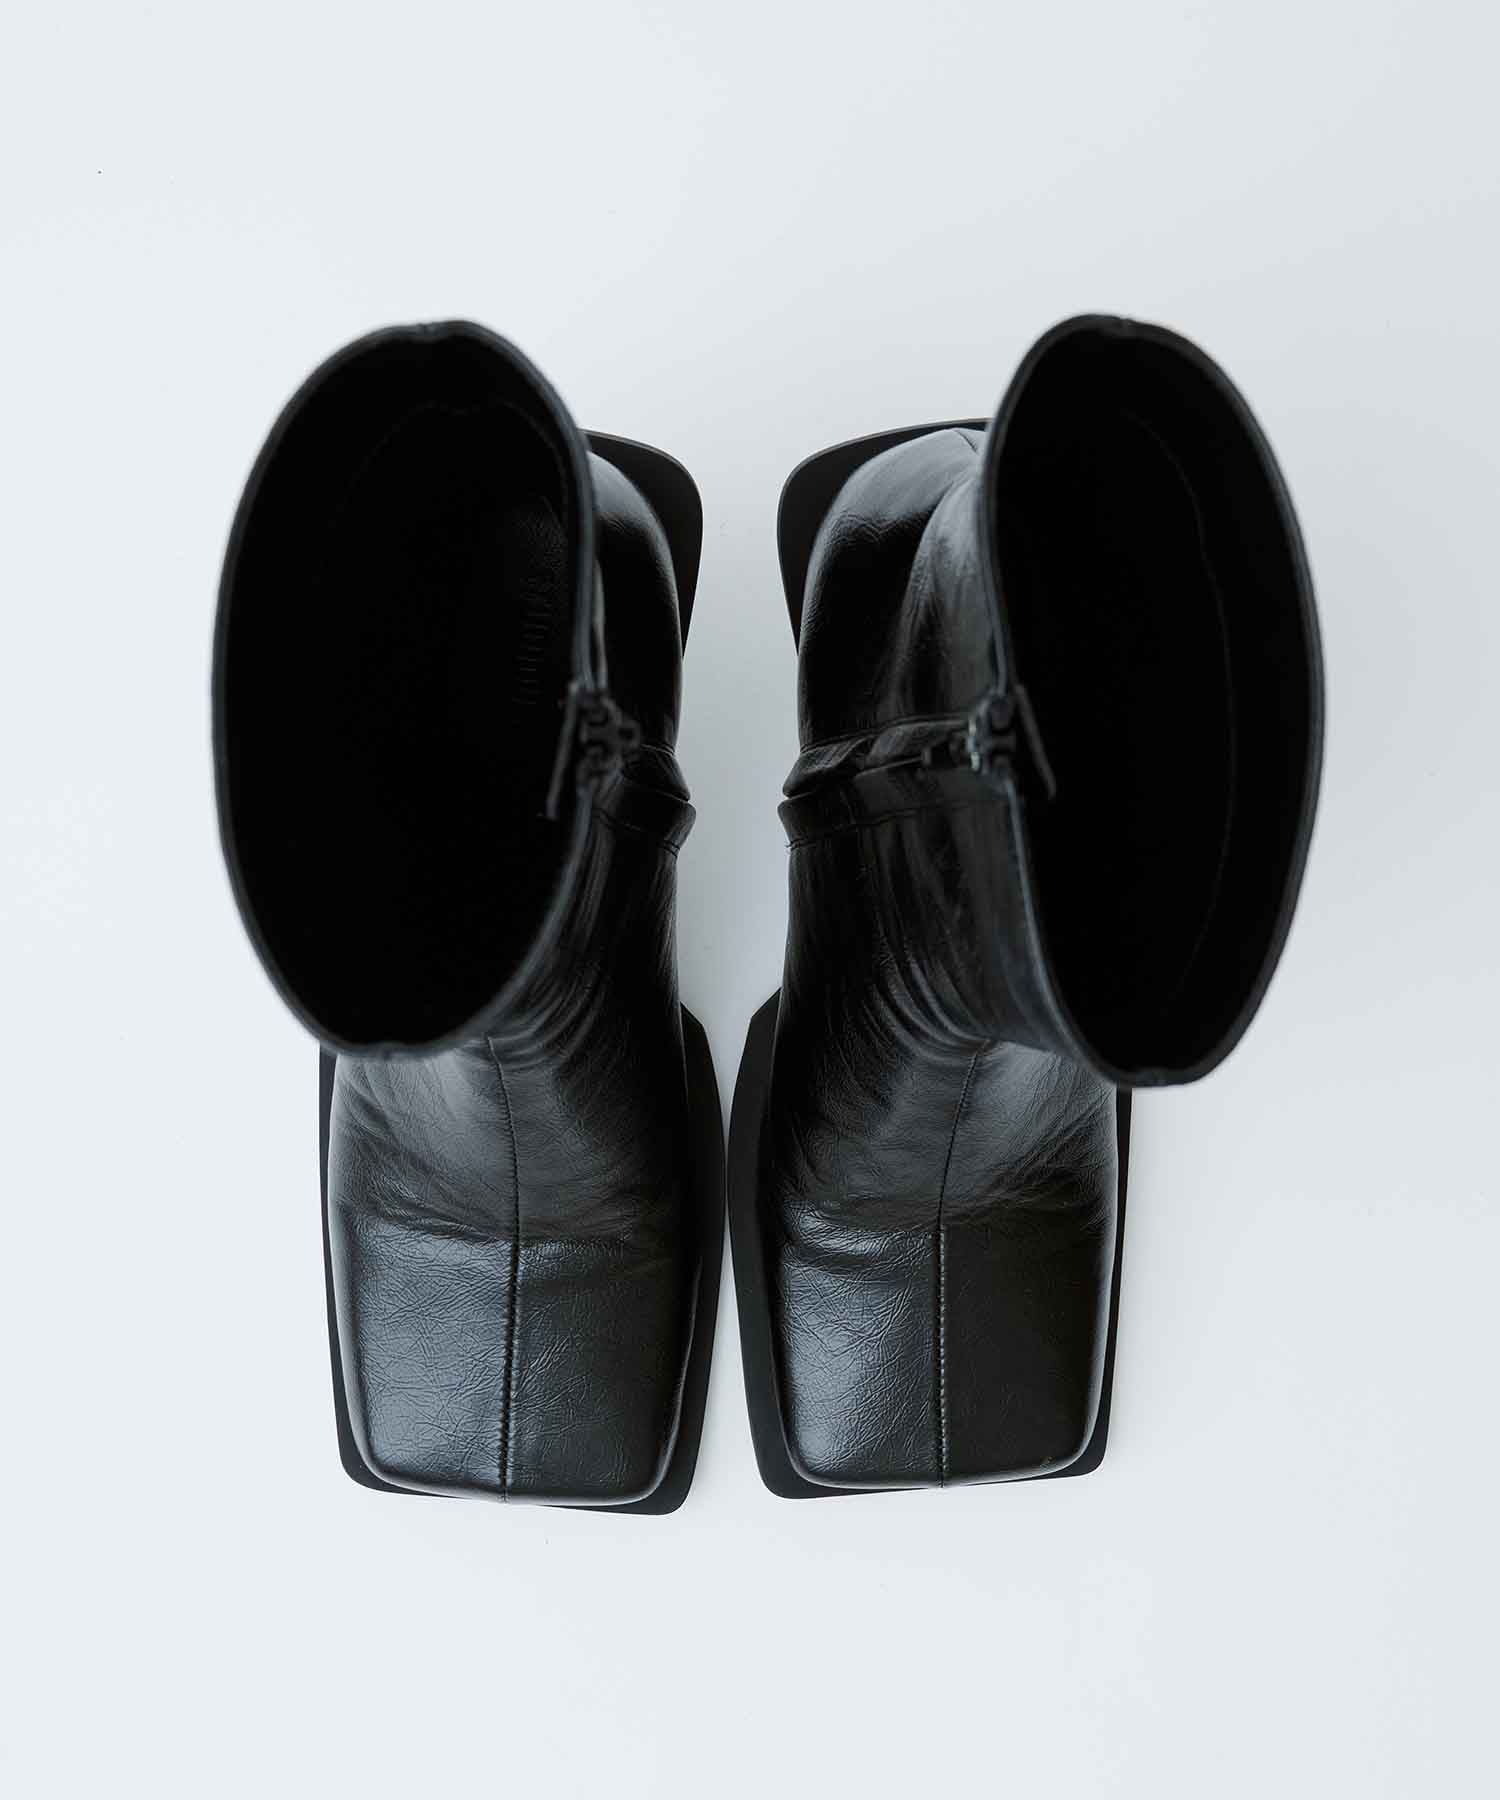 日本製 arlfredoBANNISTER square toe shoesブーツ